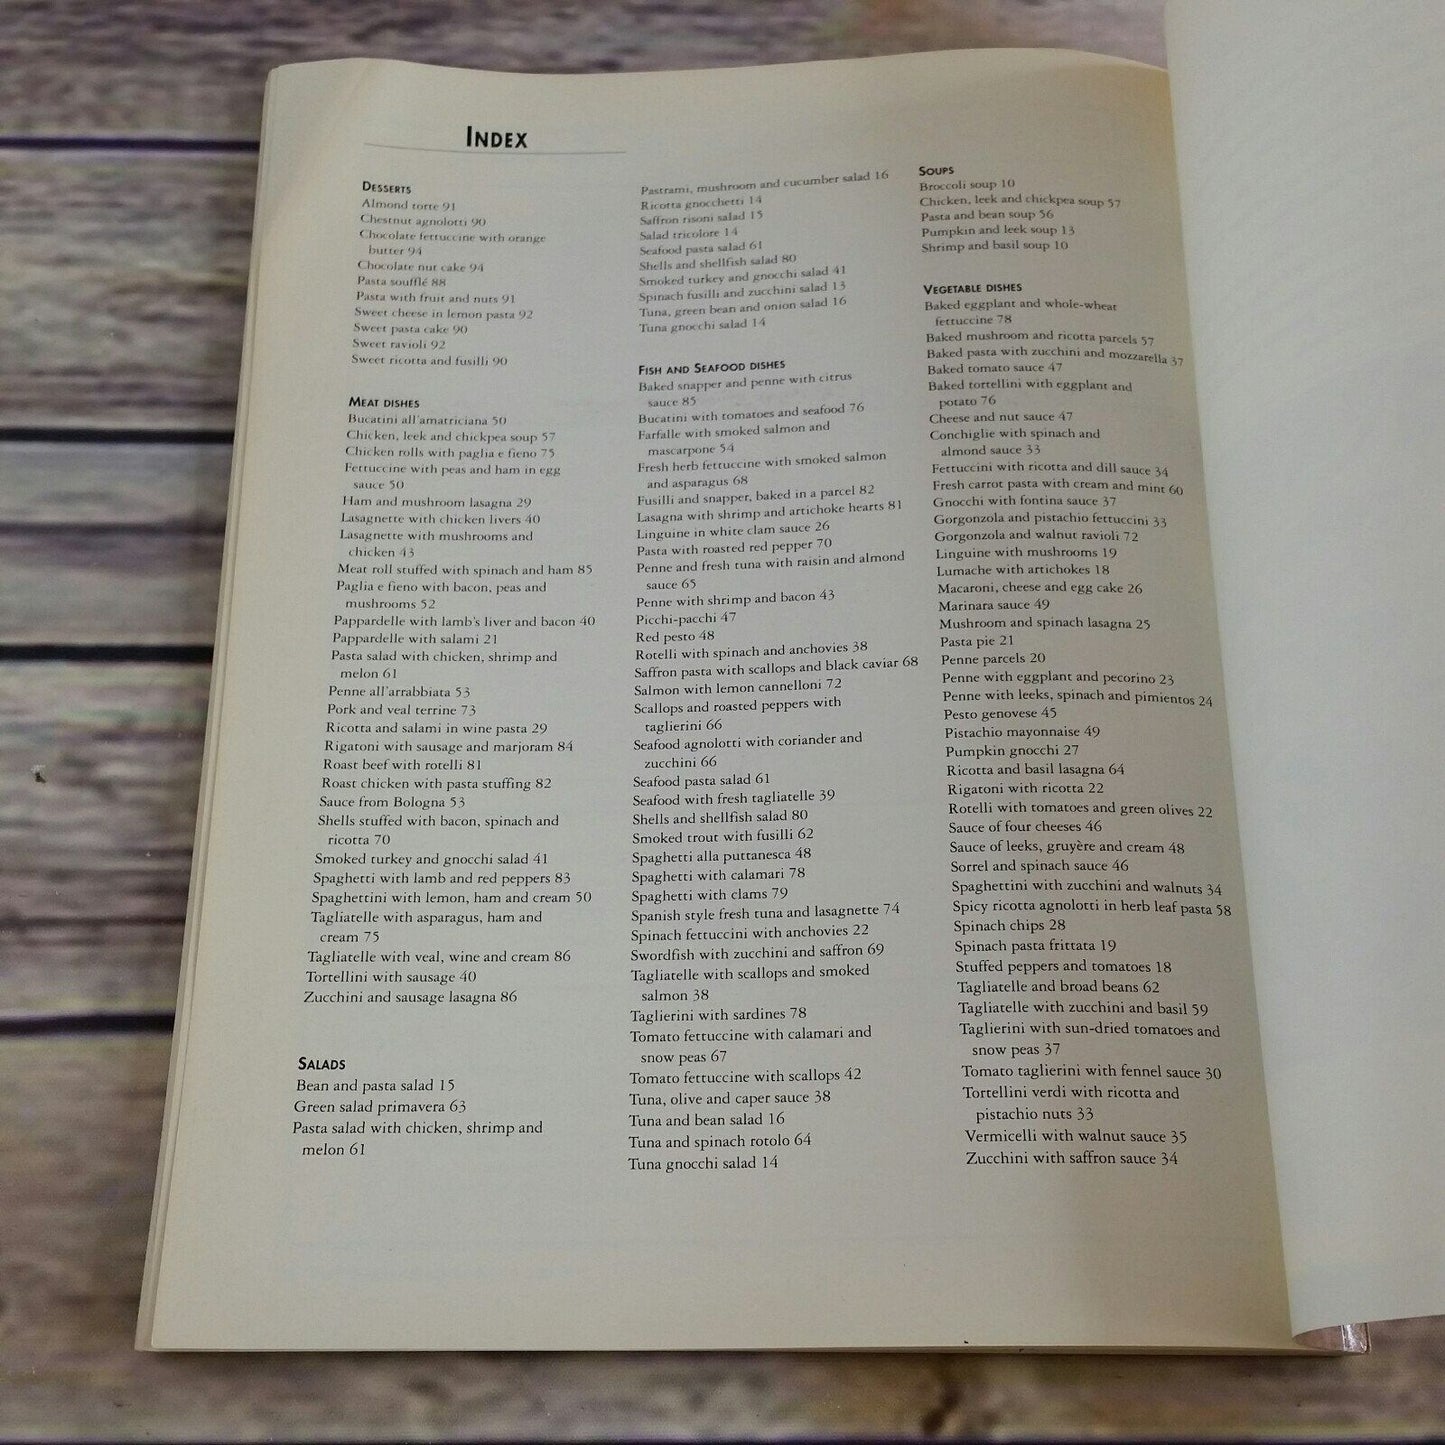 Vintage Cookbook The New Pasta Cookbook Recipes 1993 Joanne Glynn Paperback